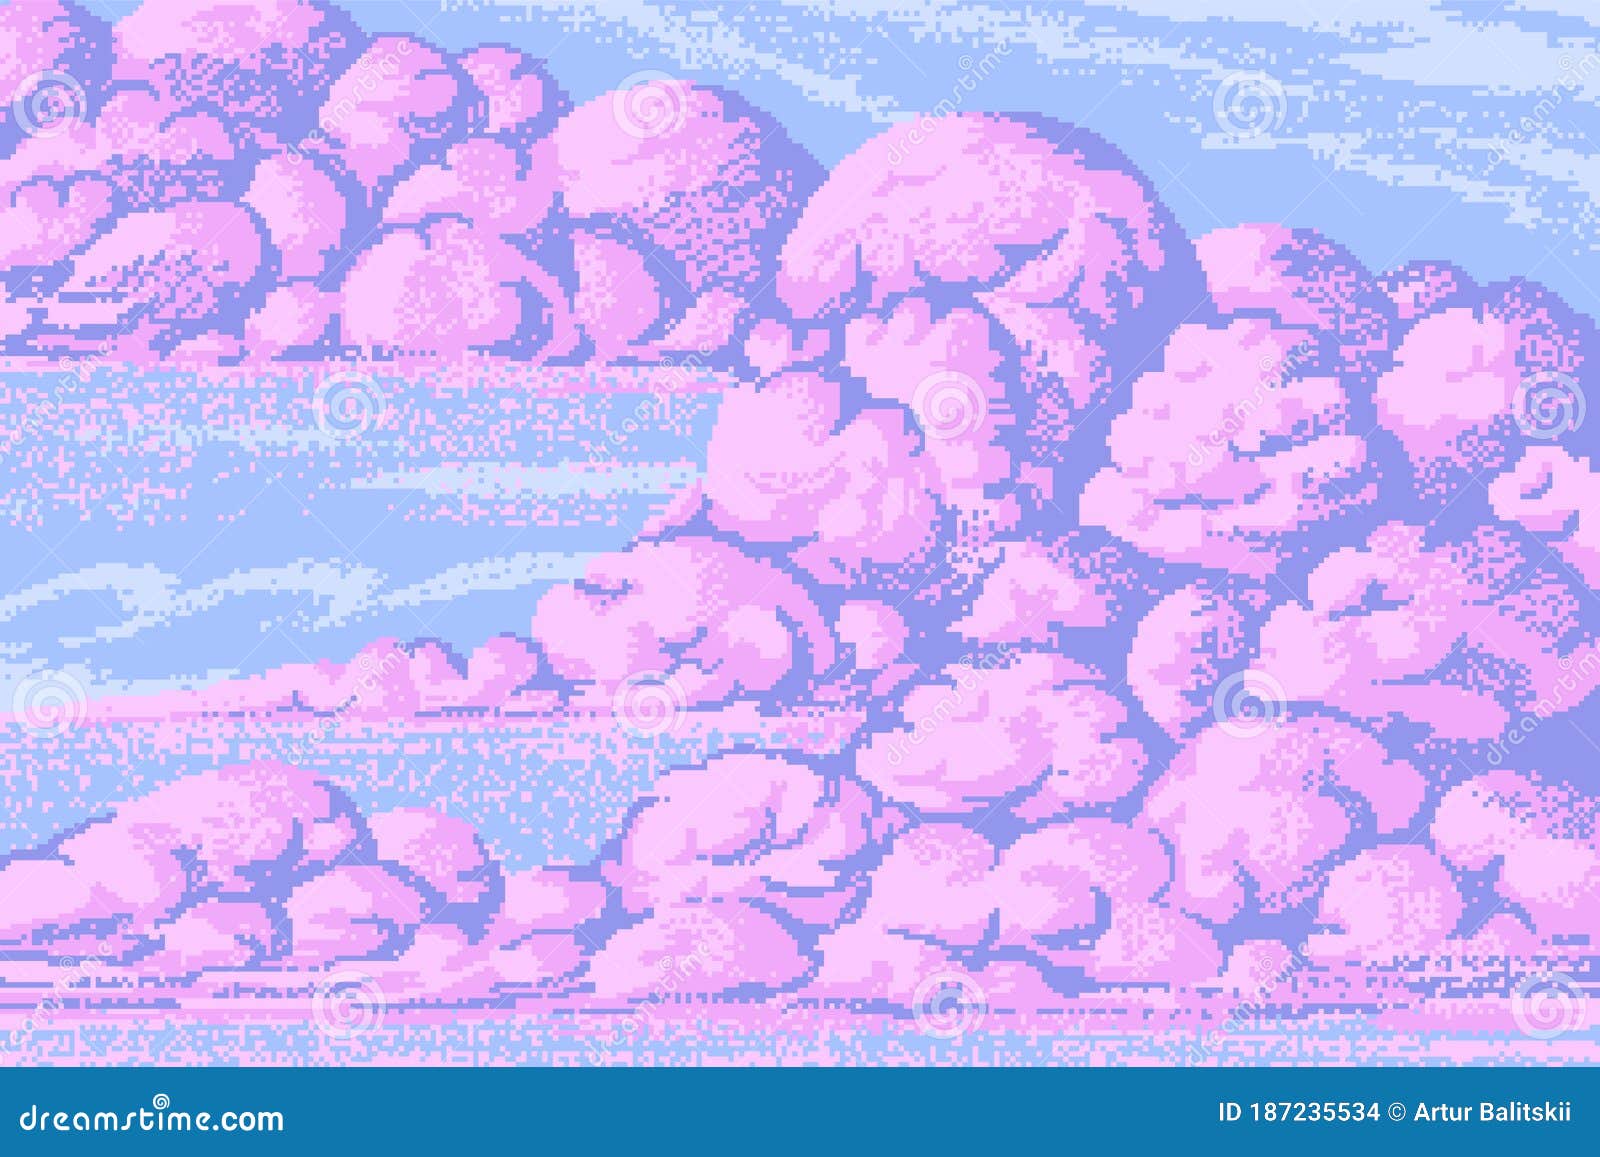 Những tác phẩm pixel art về đám mây luôn đem lại cảm giác tràn đầy sức sống và yên tĩnh của thiên nhiên. Những hình ảnh tràn trề sáng tạo với những tông màu mát mẻ sẽ khiến cho bạn cảm thấy sảng khoái và thư giãn.